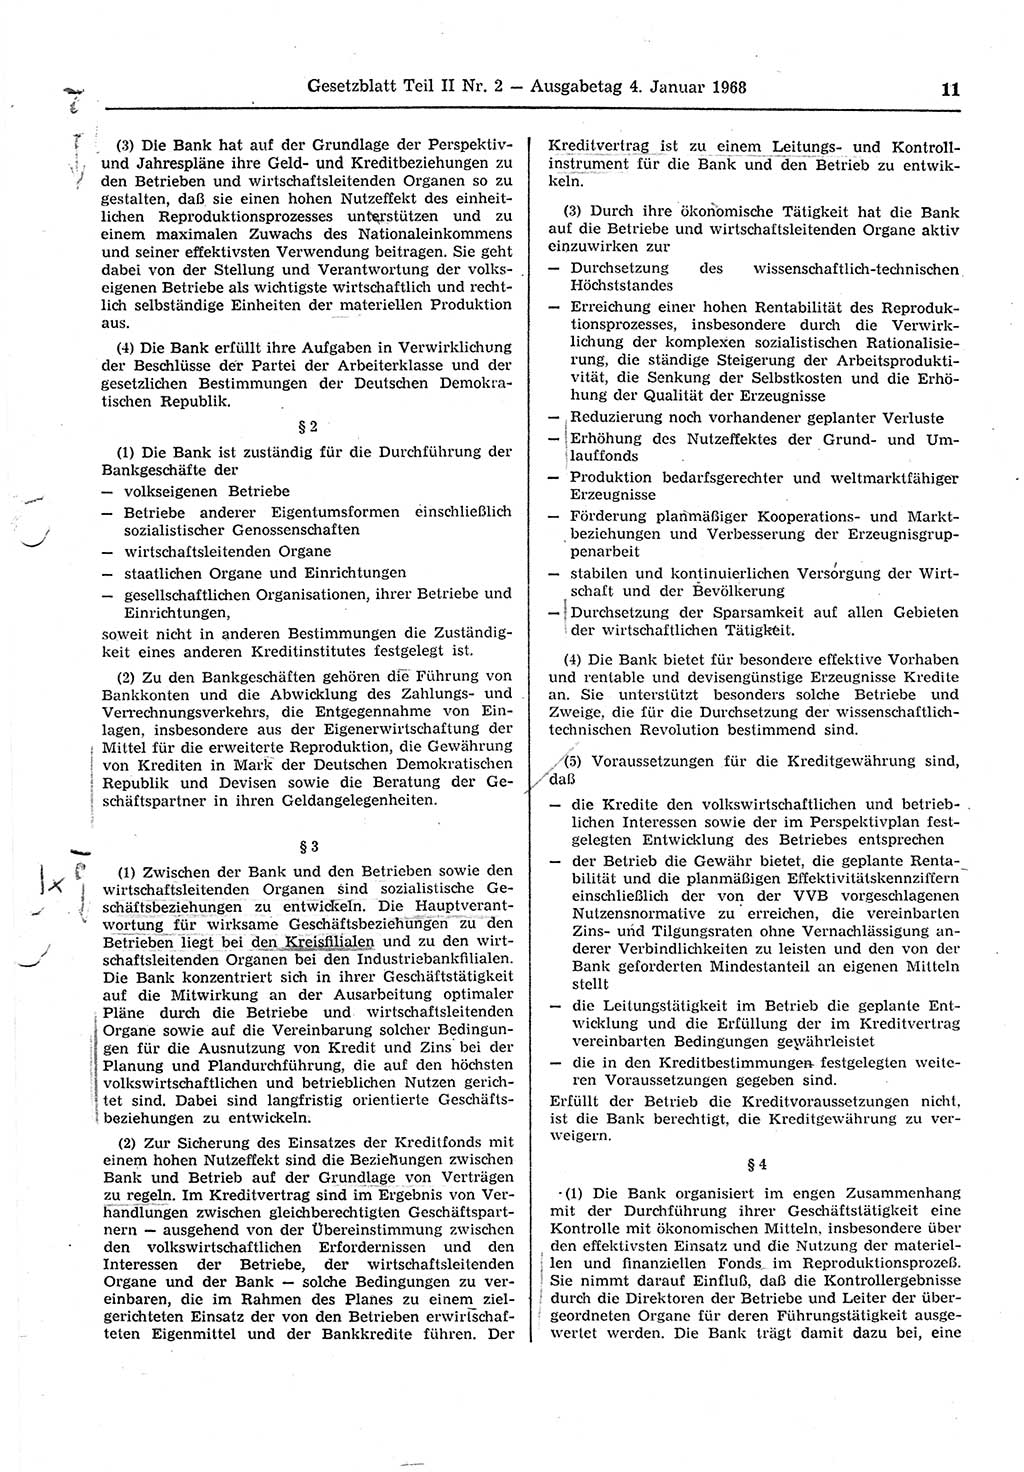 Gesetzblatt (GBl.) der Deutschen Demokratischen Republik (DDR) Teil ⅠⅠ 1968, Seite 11 (GBl. DDR ⅠⅠ 1968, S. 11)